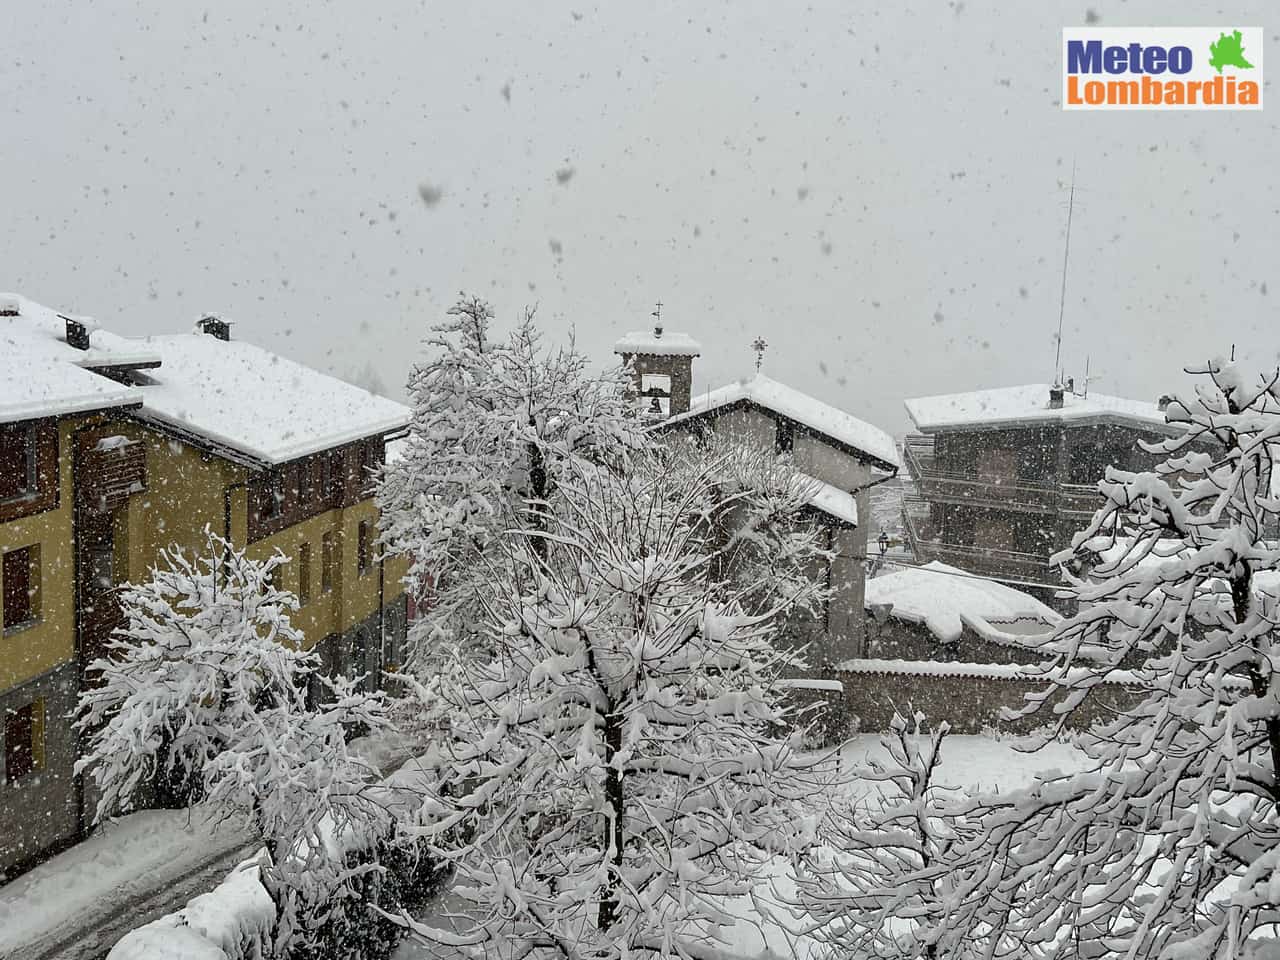 meteo lombardia2 - Meteo Lombardia, una nevicata normale in un Inverno anomalo